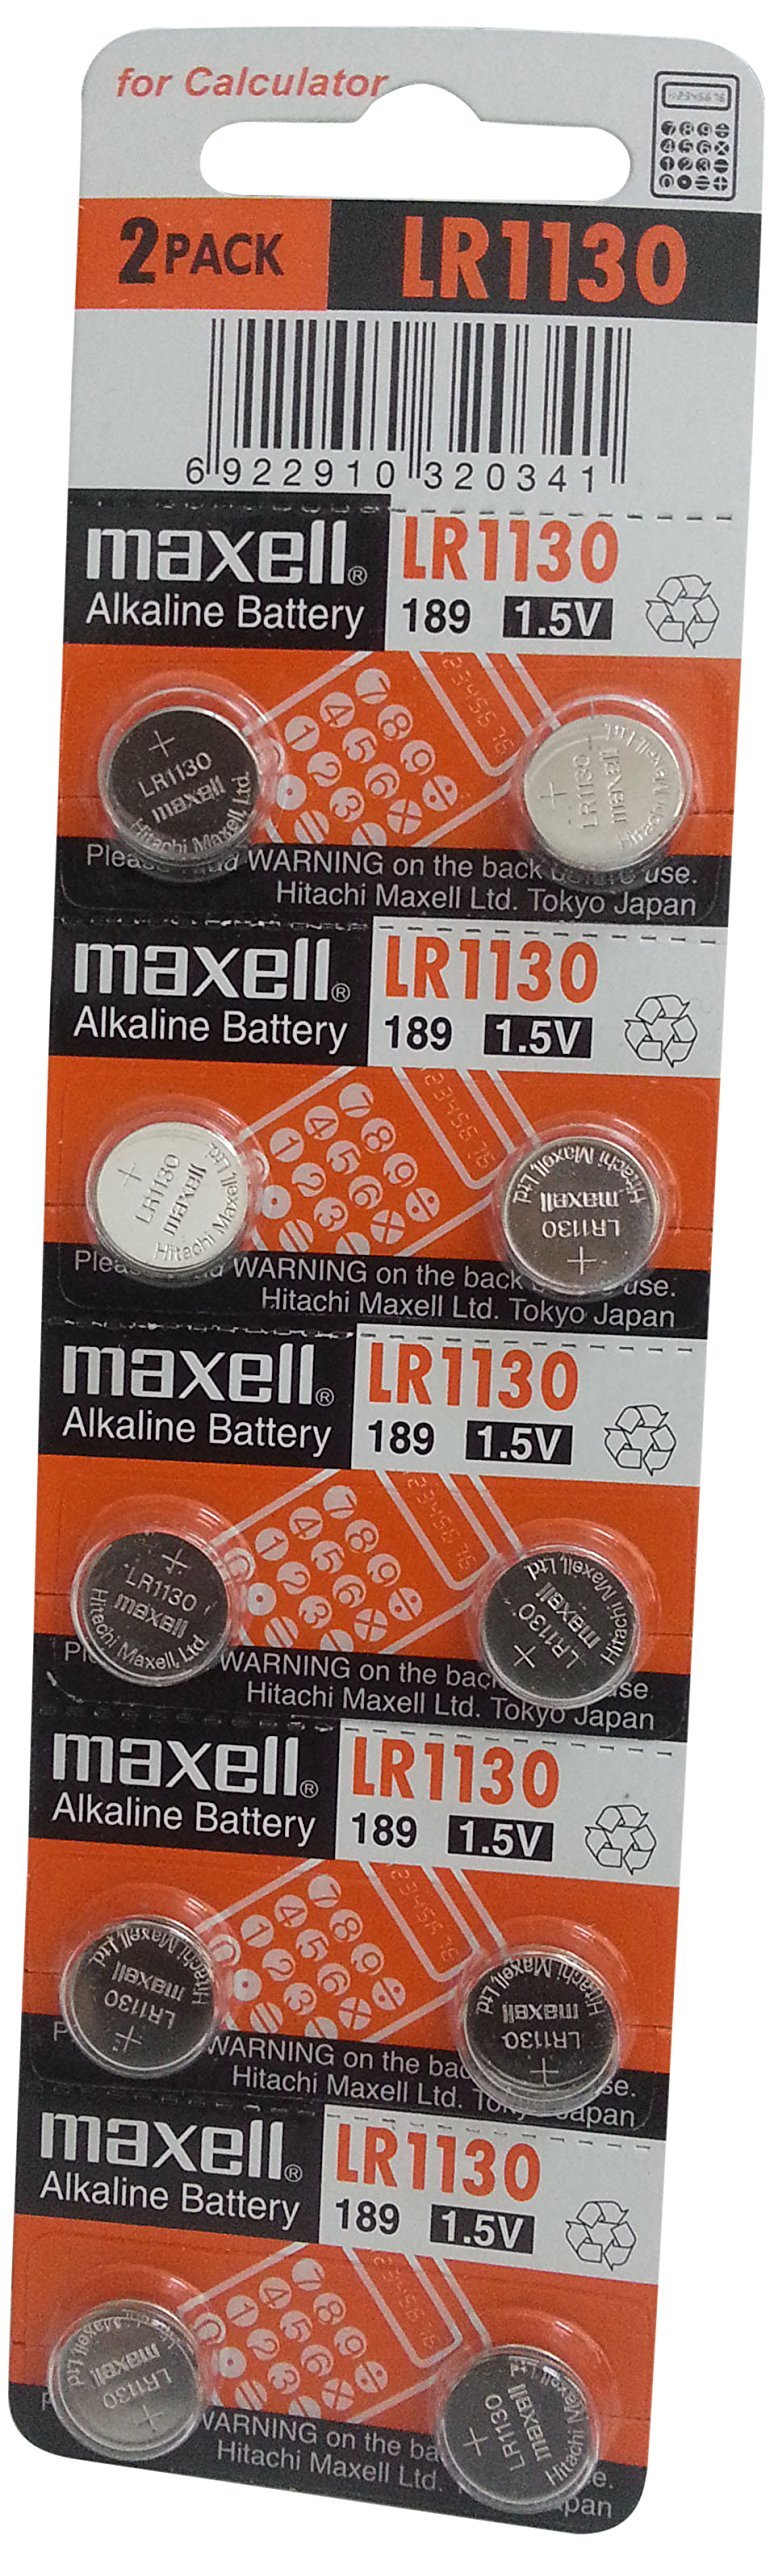 [Australia] - Maxell LR1130 Alkaline Battery 1.5V, 10 Pack 10 Count (Pack of 1) 